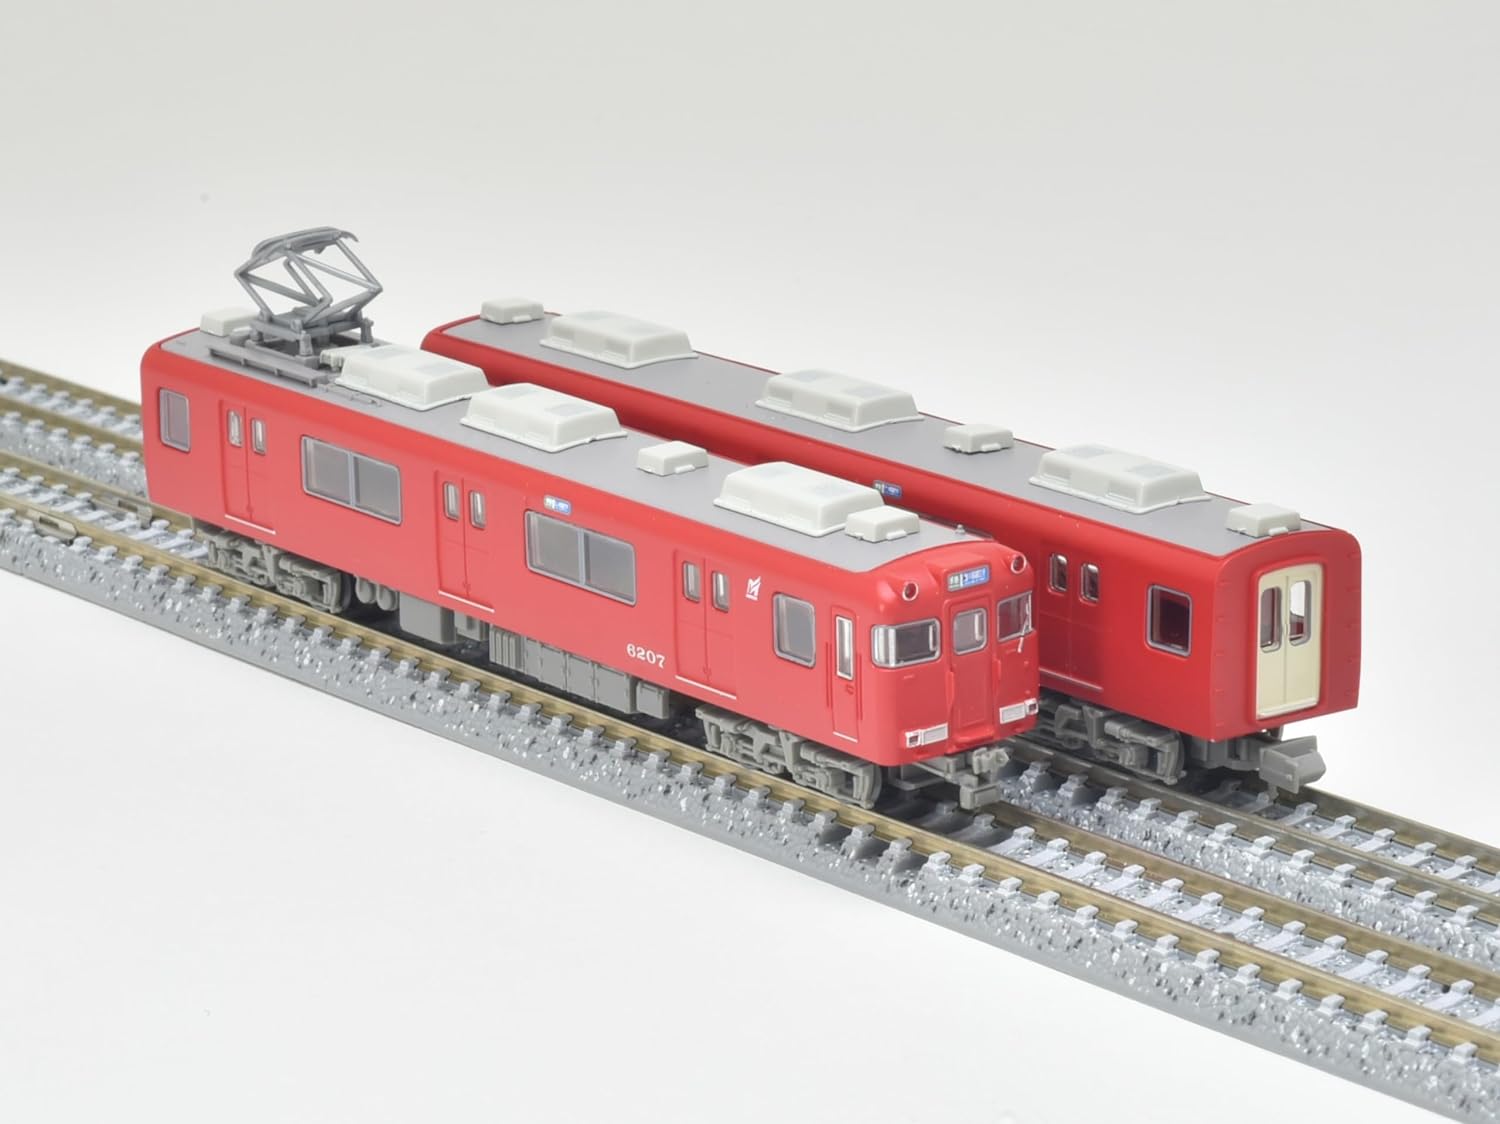 Tomytec Railway Collection MT03 Nagoya Railway 2-Car Set - BanzaiHobby